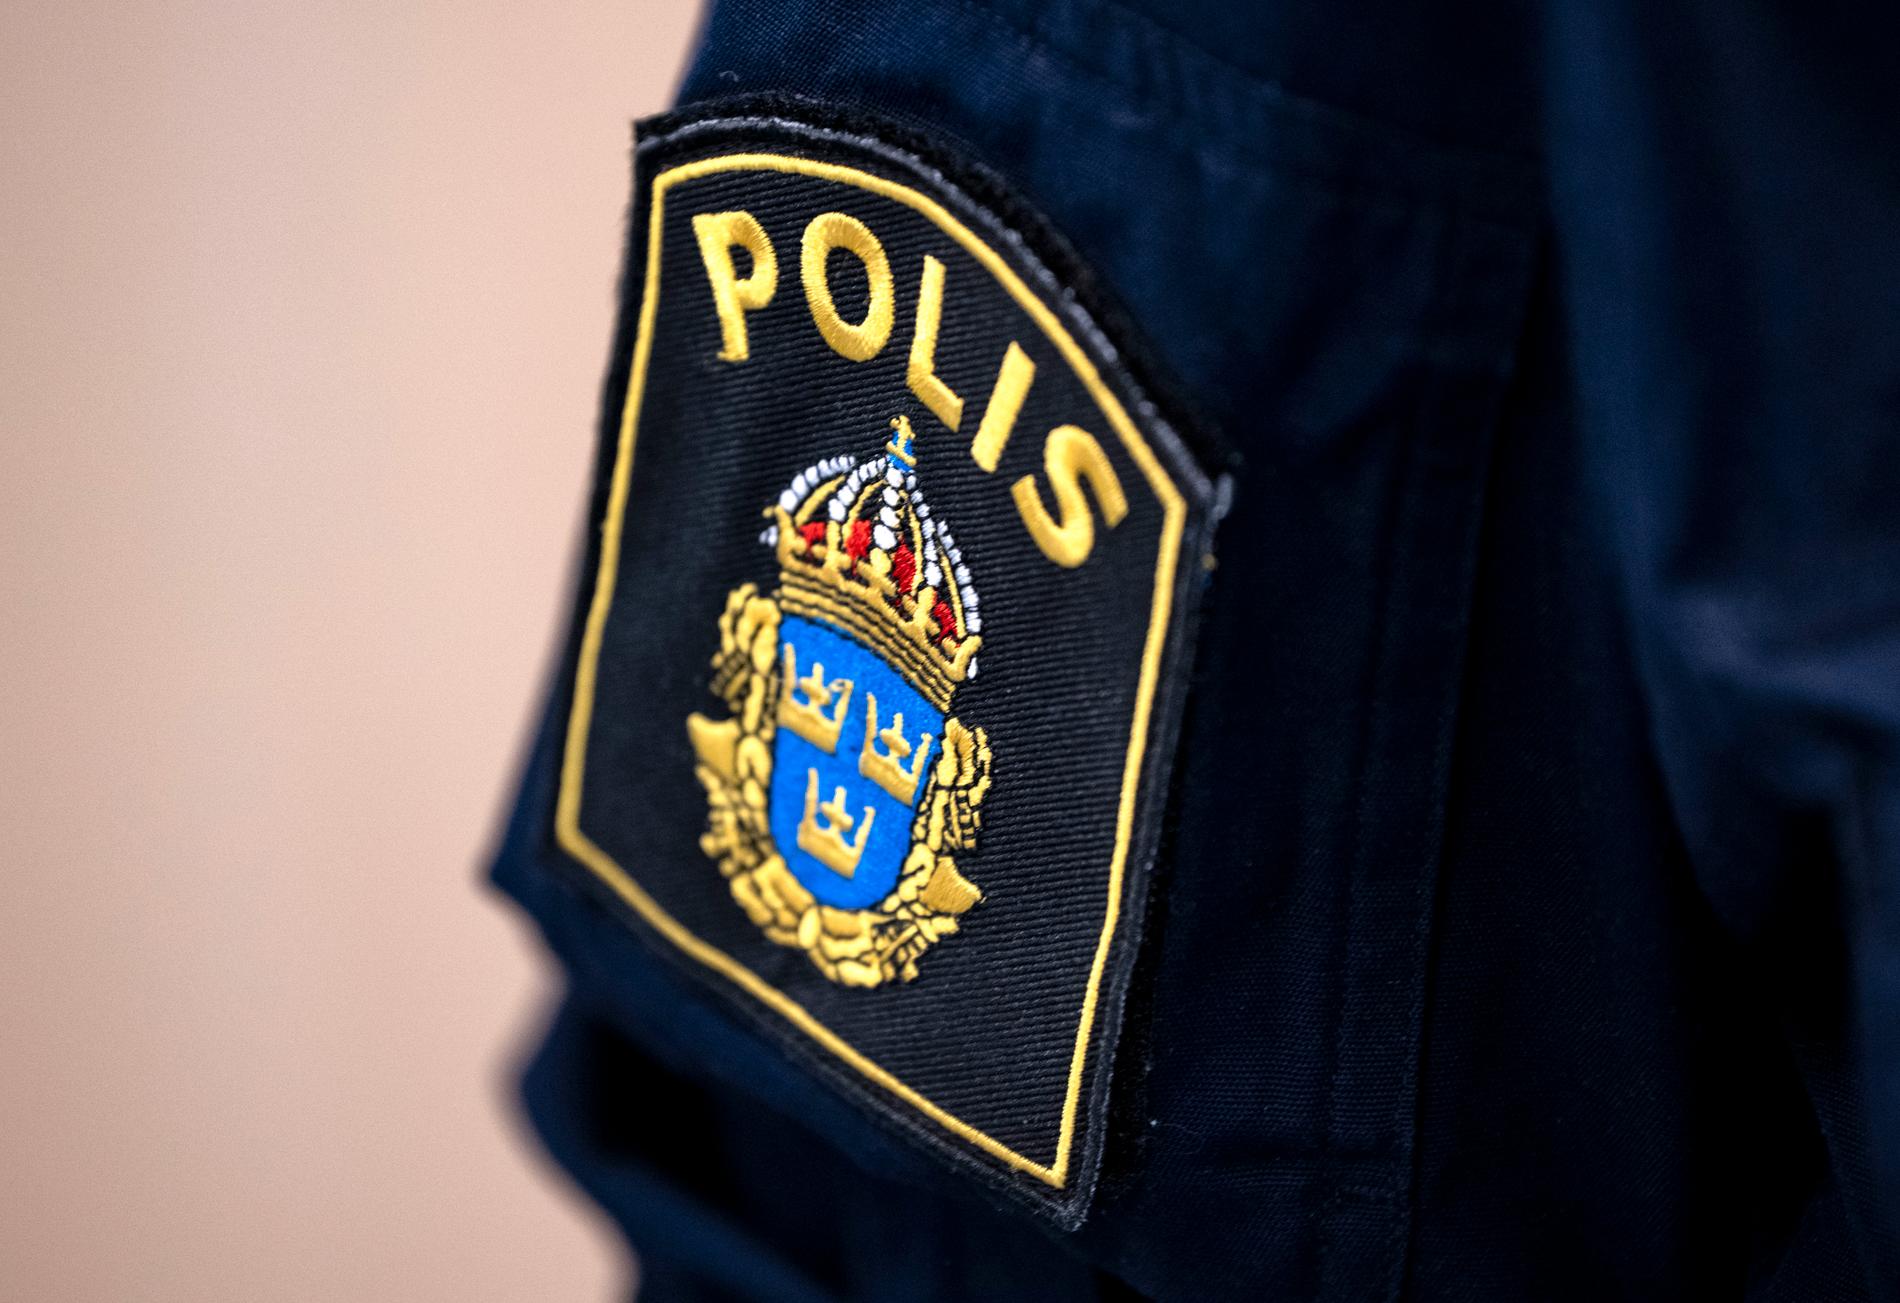 Två poliser åtalas för att ha utnyttjat en missbrukare i vad åklagaren kallar en "olaglig brottsprovokation" i Stockholmsförorten Bandhagen. Arkivbild.